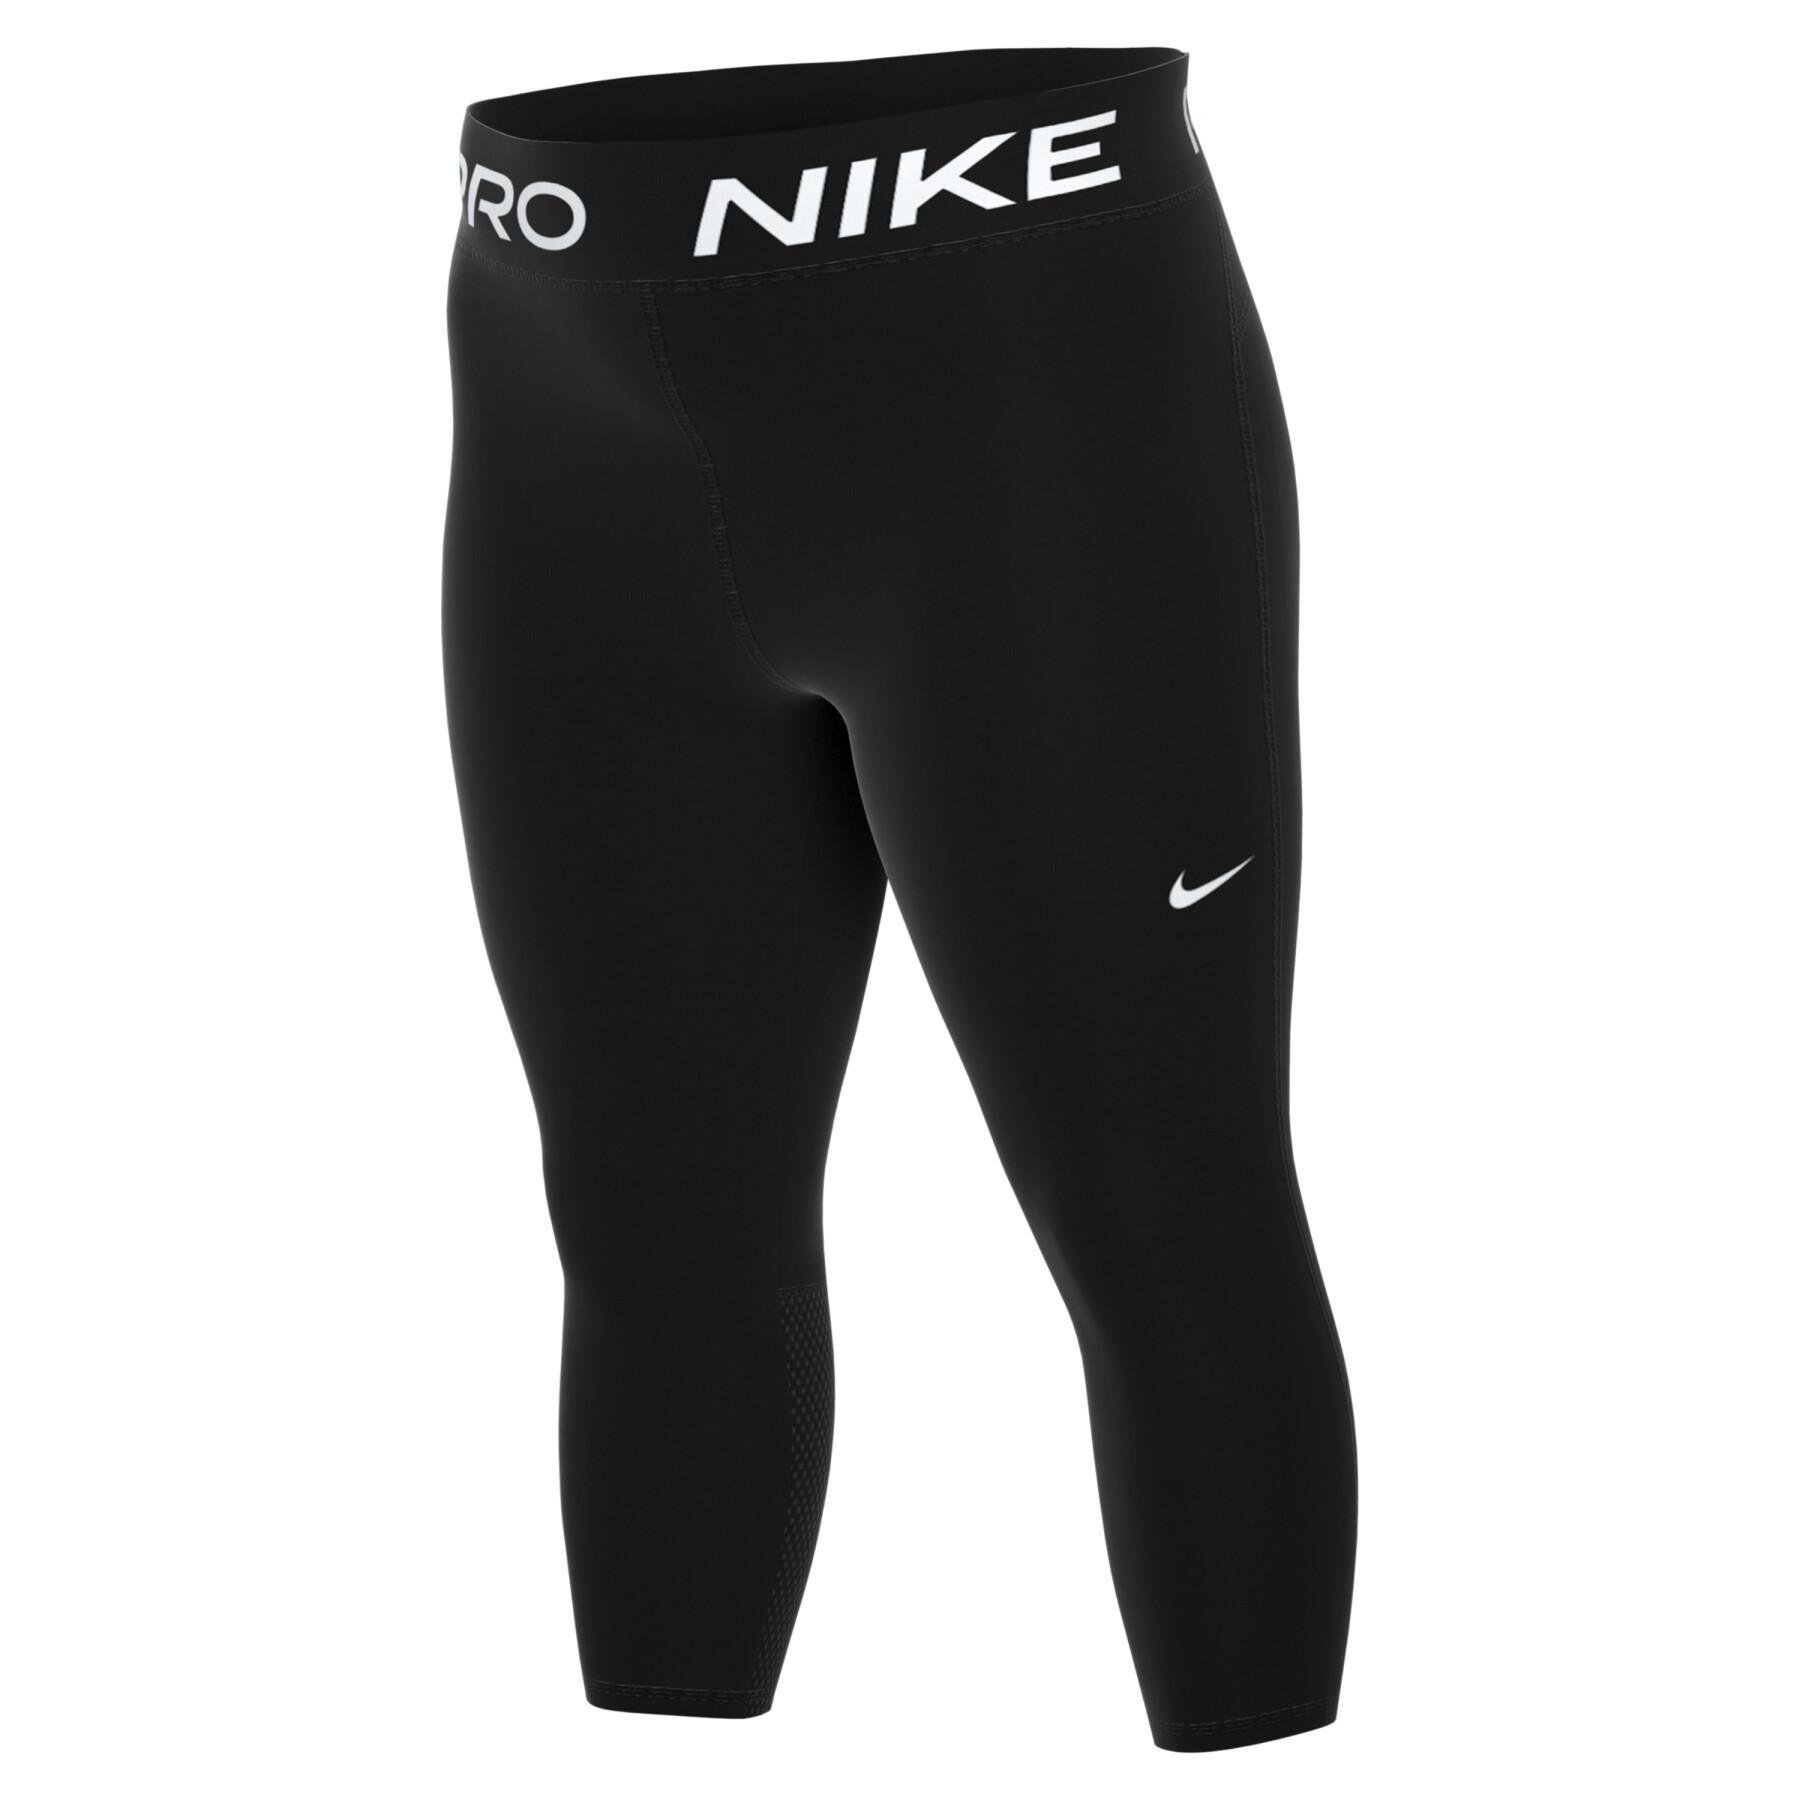 Leggings Damen Nike Pro 365 - Hosen / Leggings - Damenbekleidung - Fitness